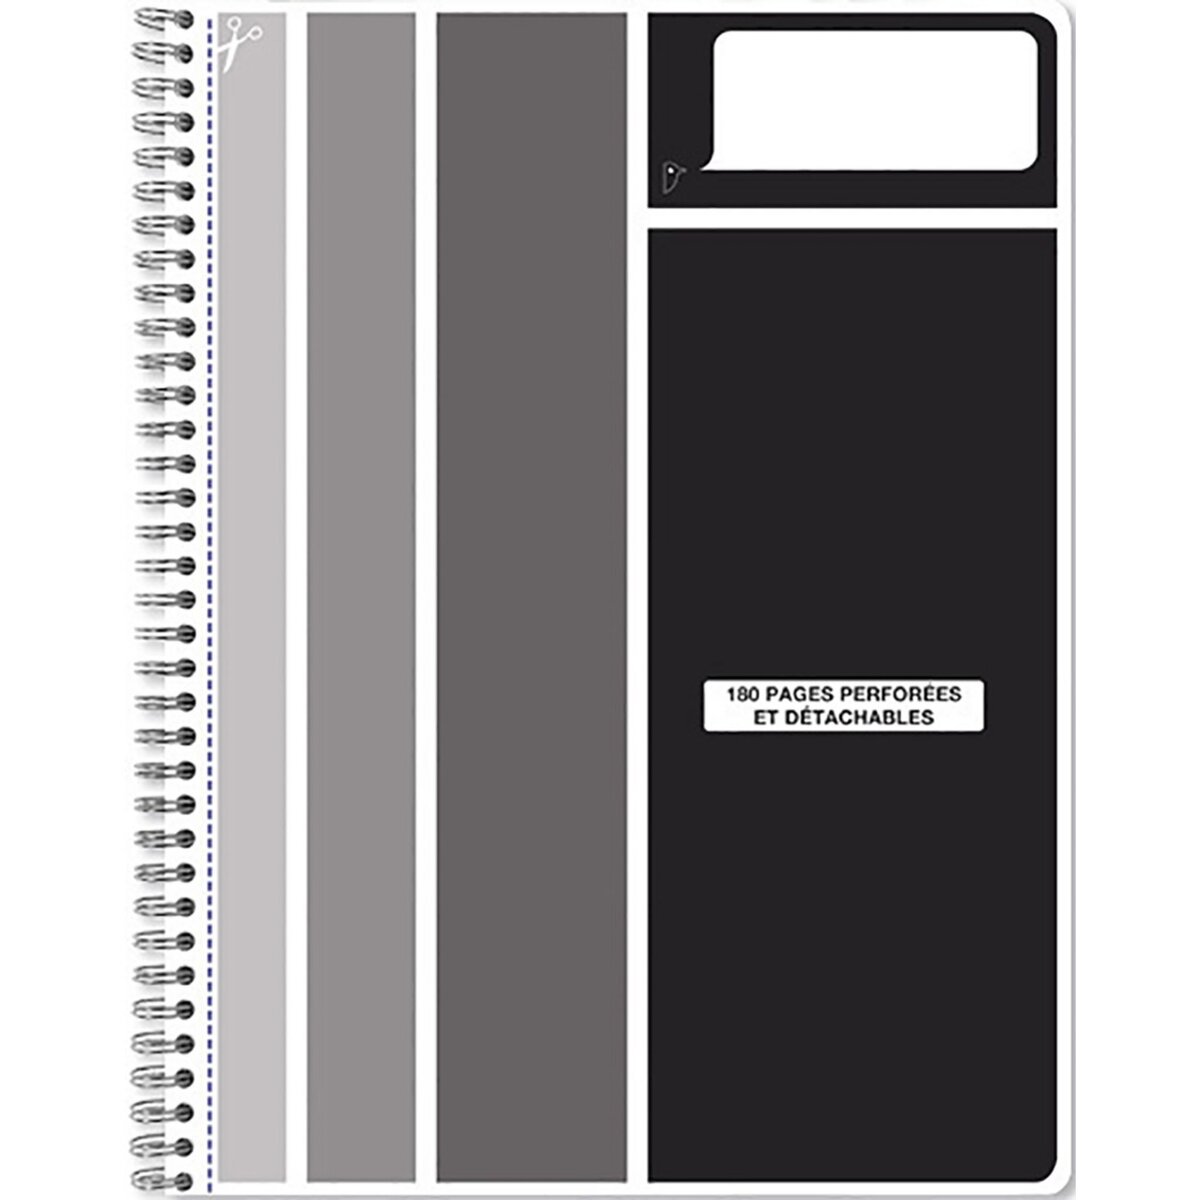 AUCHAN Cahier microperforé 21x29,7cm 180 pages 90g - couverture polypropylène - noir